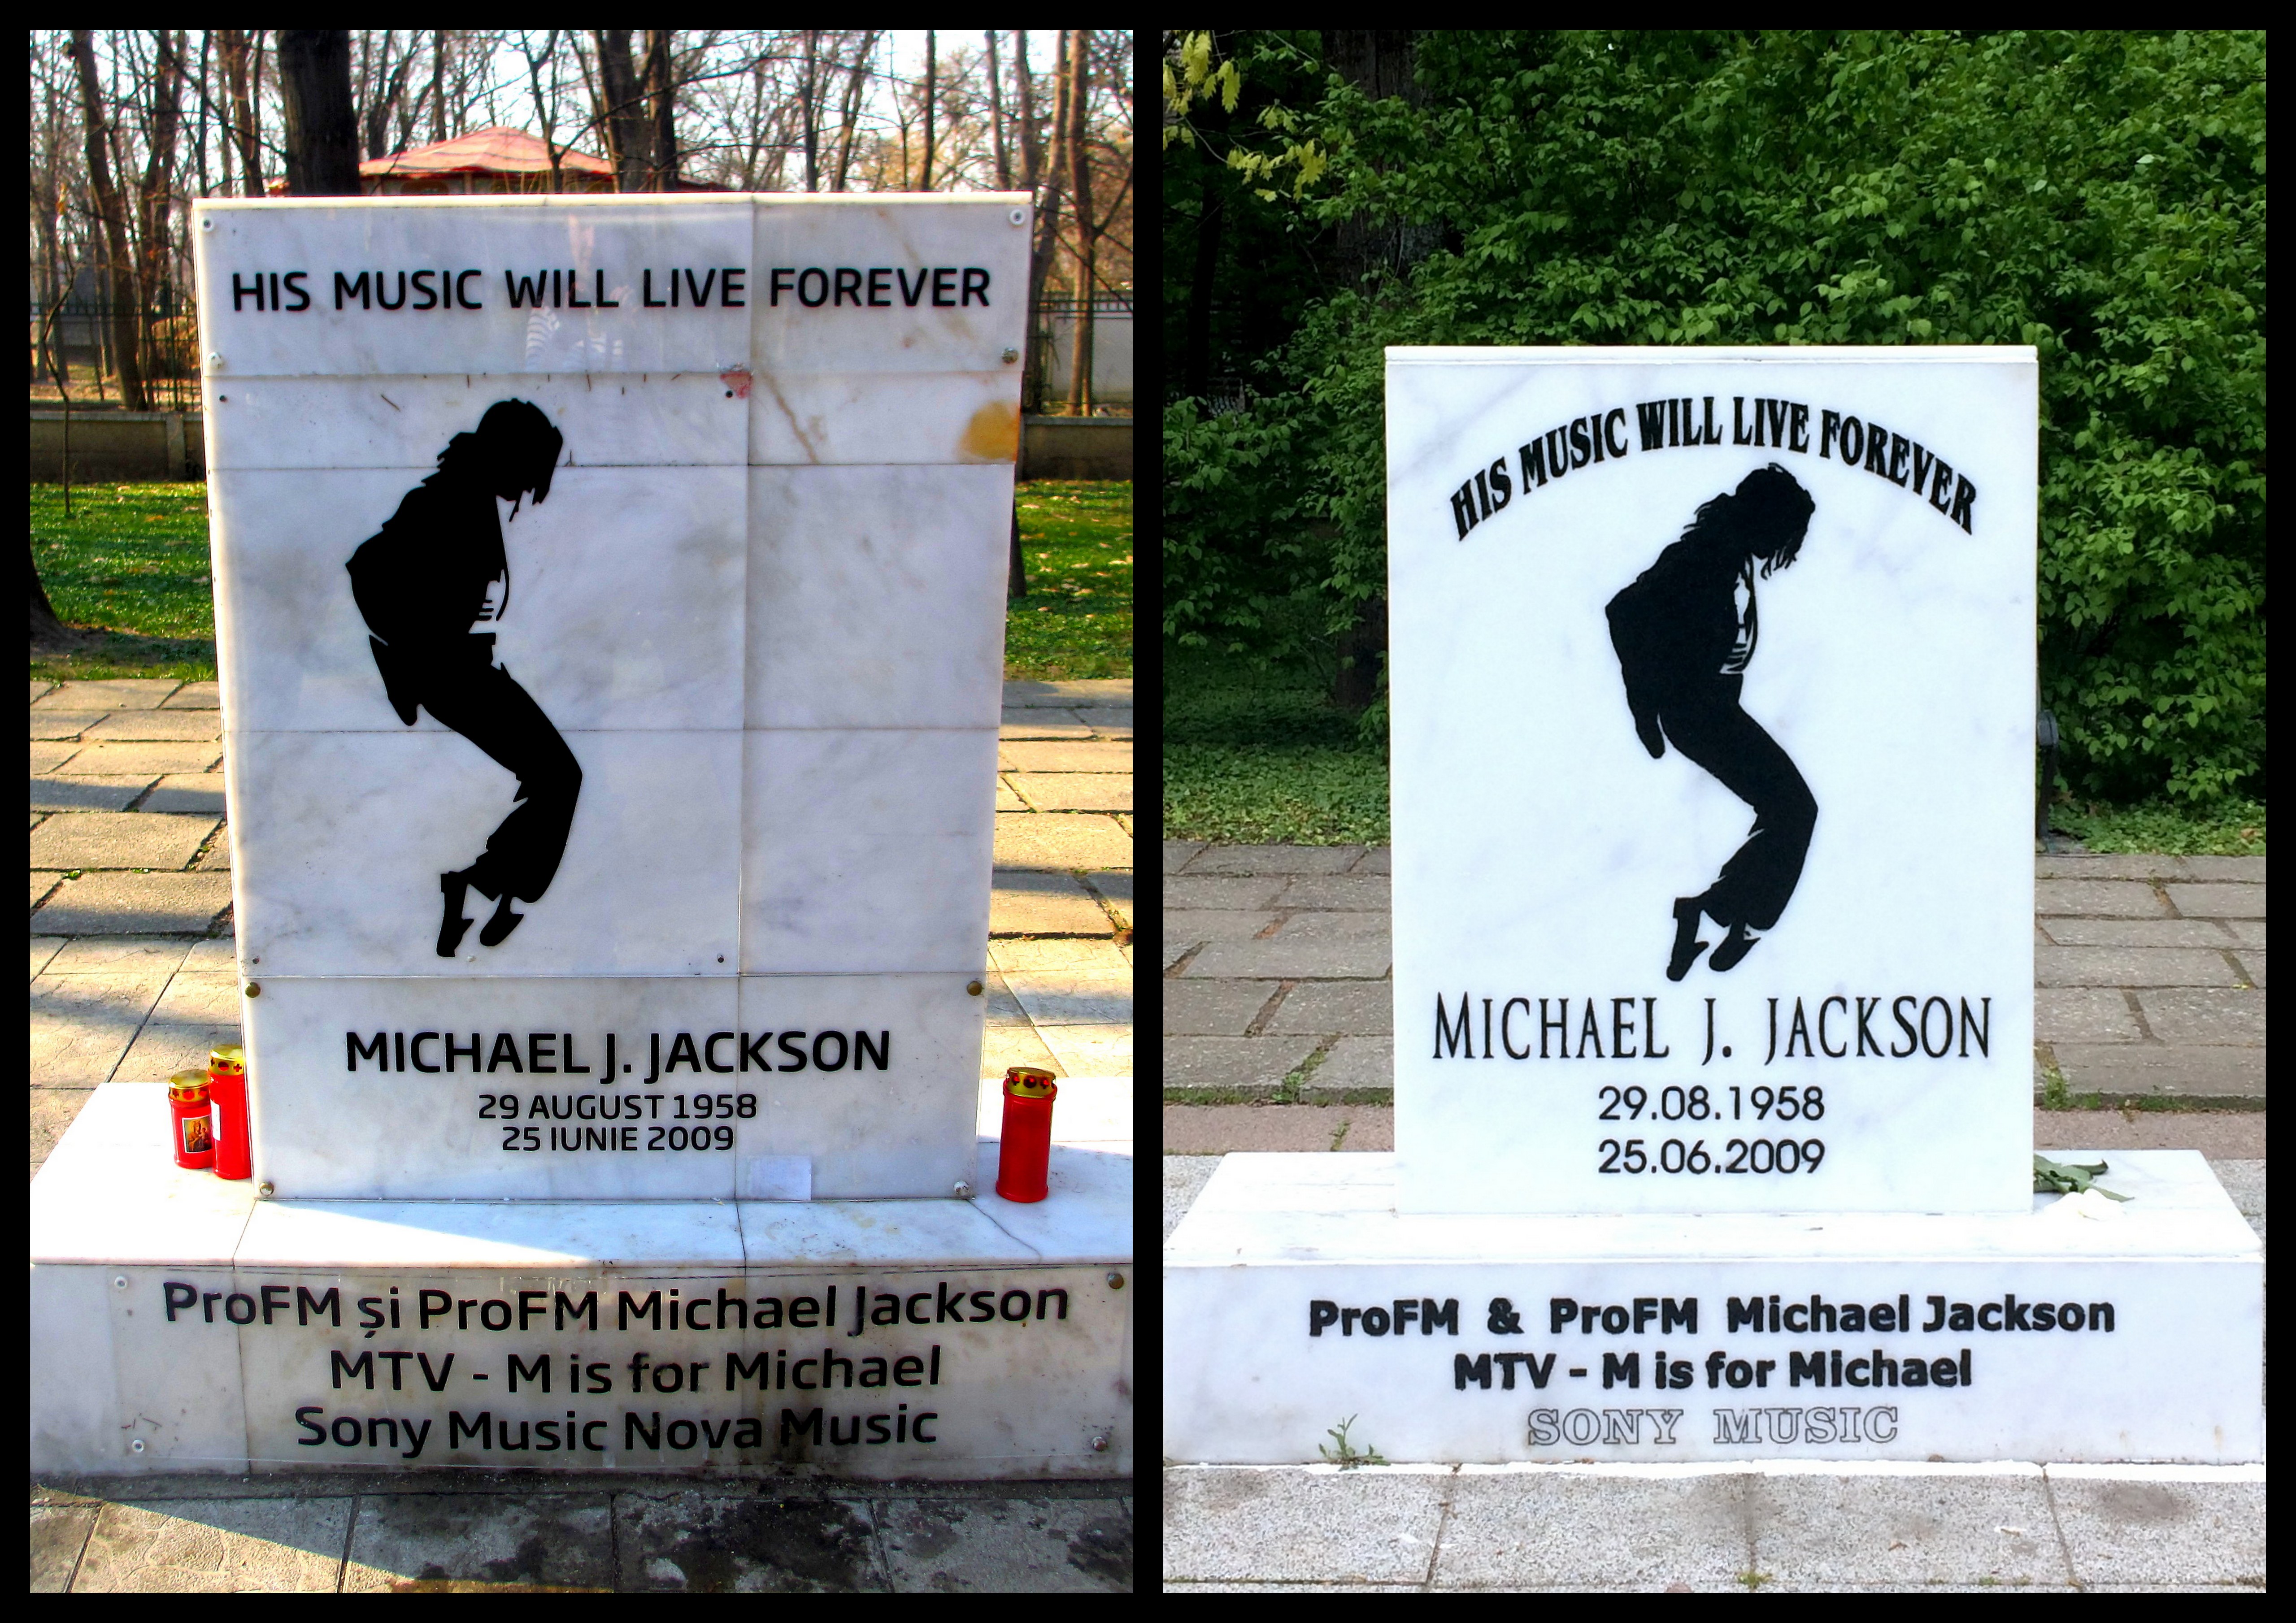 Stary i nowy pomnik na cześć Michaela Jacksona w Parku Herăstrău - Rumunia, Bukareszt